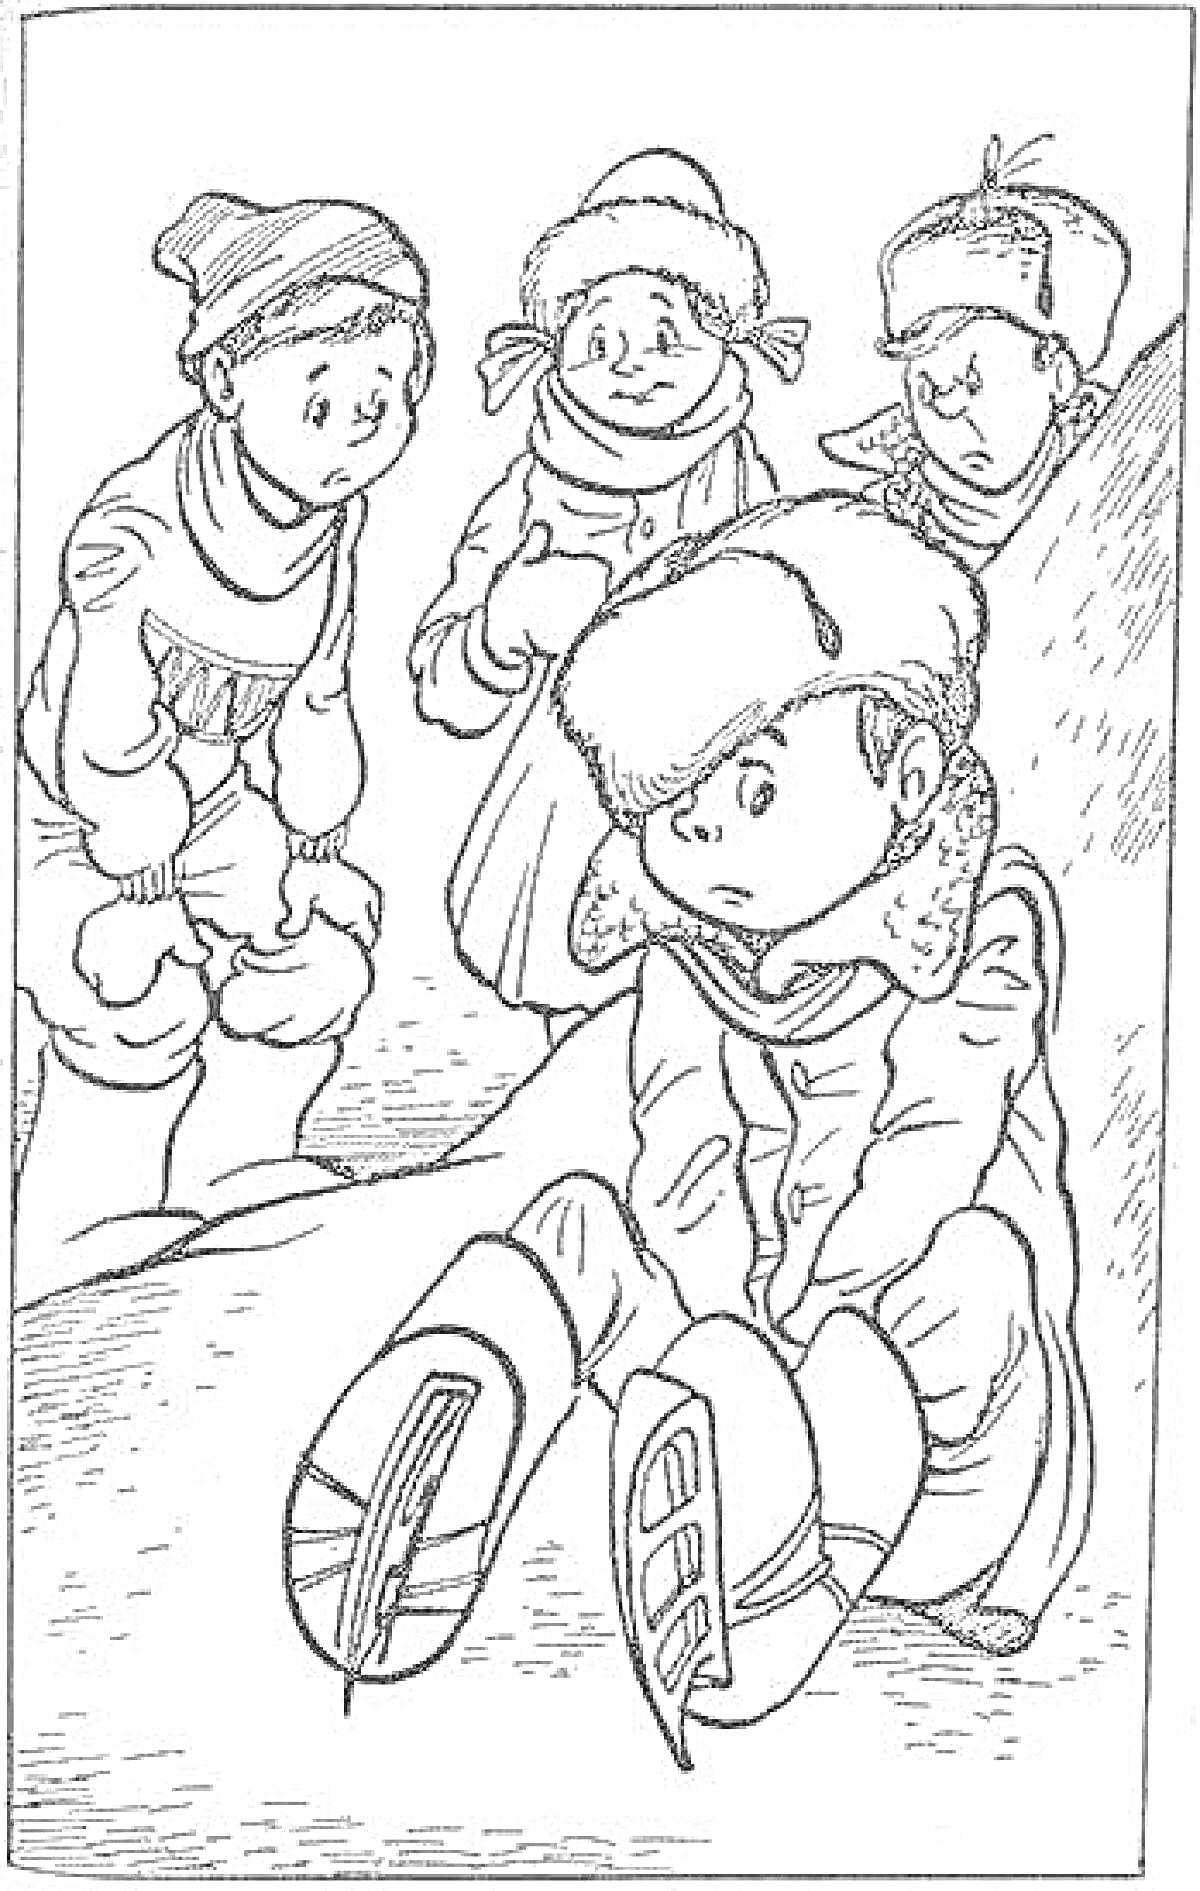 РаскраскаДети на горке: три мальчика и девочка в зимней одежде